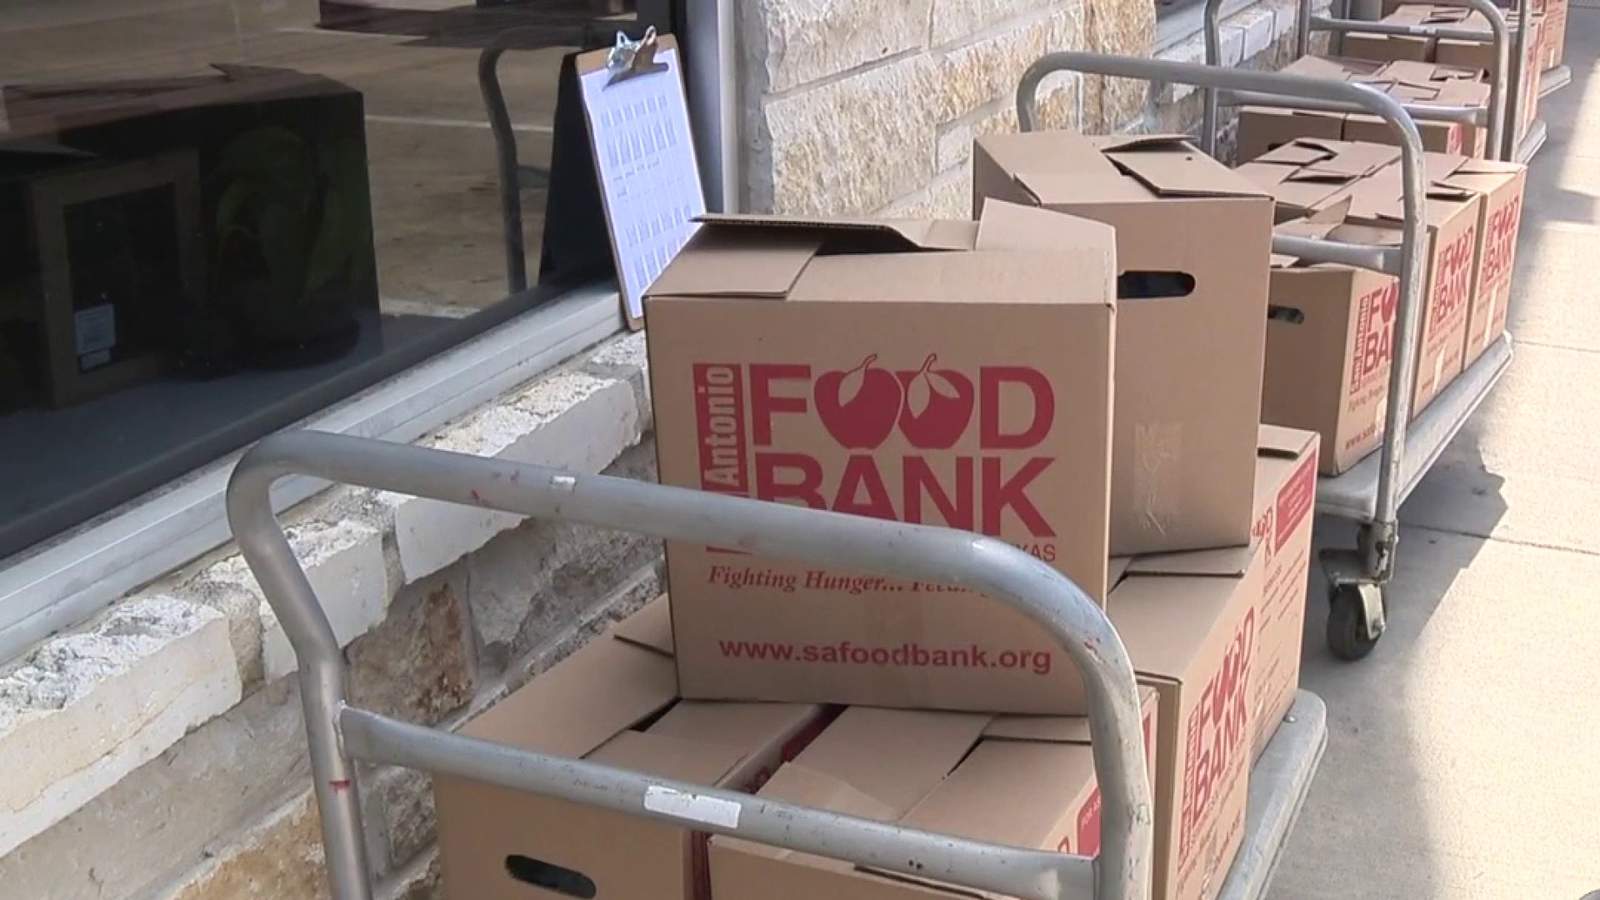 Federal program helping San Antonio Food Bank meet growing demand